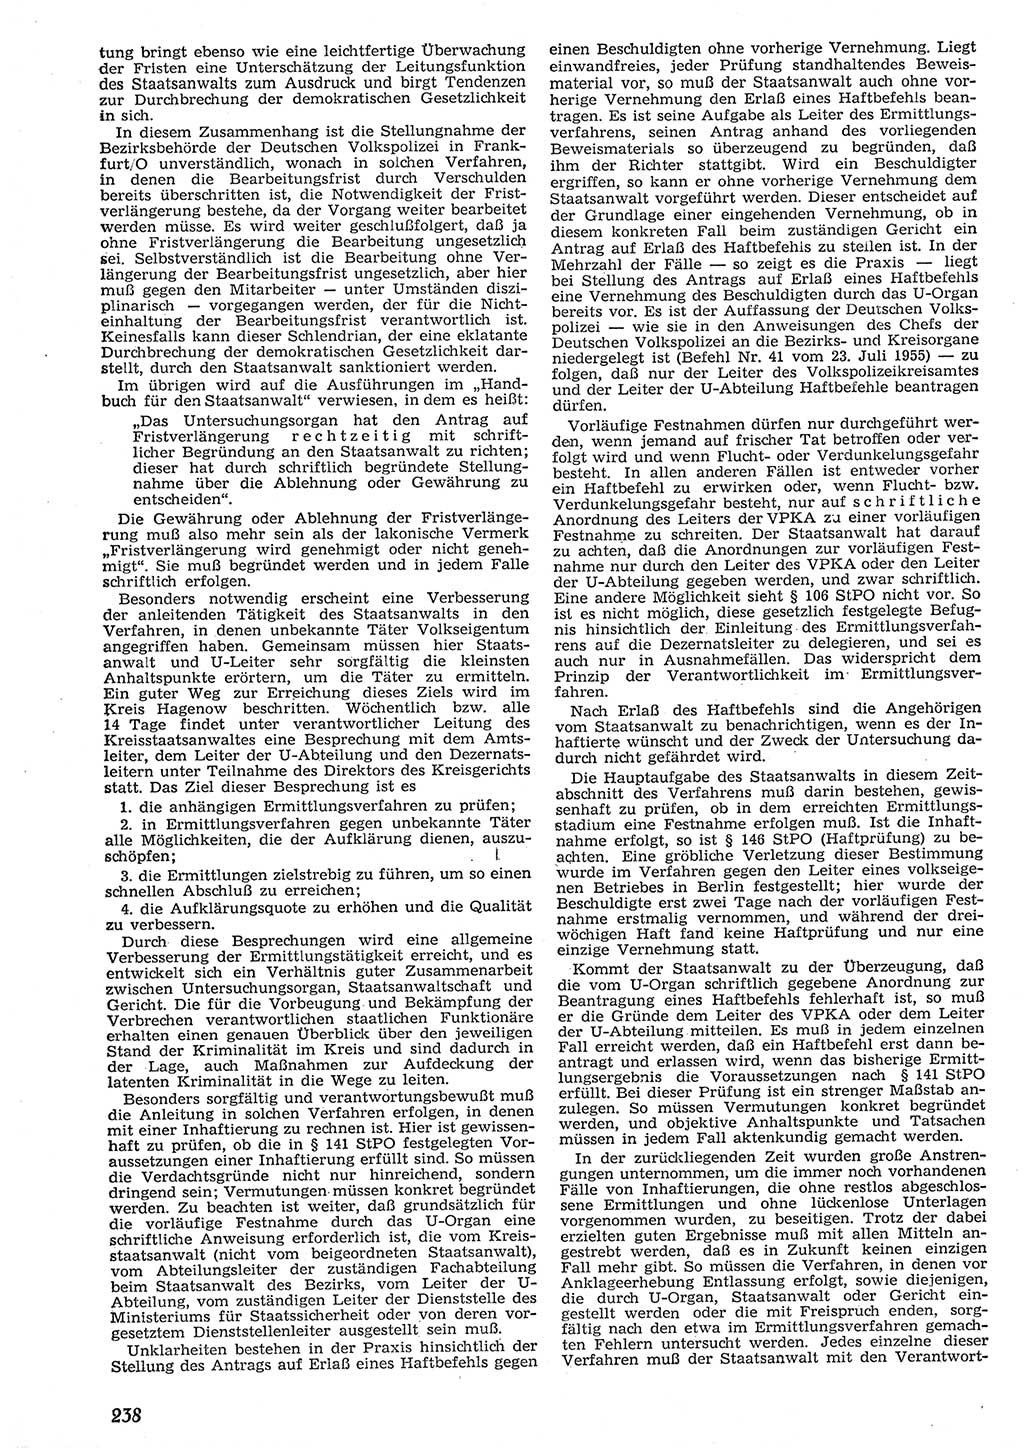 Neue Justiz (NJ), Zeitschrift für Recht und Rechtswissenschaft [Deutsche Demokratische Republik (DDR)], 10. Jahrgang 1956, Seite 238 (NJ DDR 1956, S. 238)